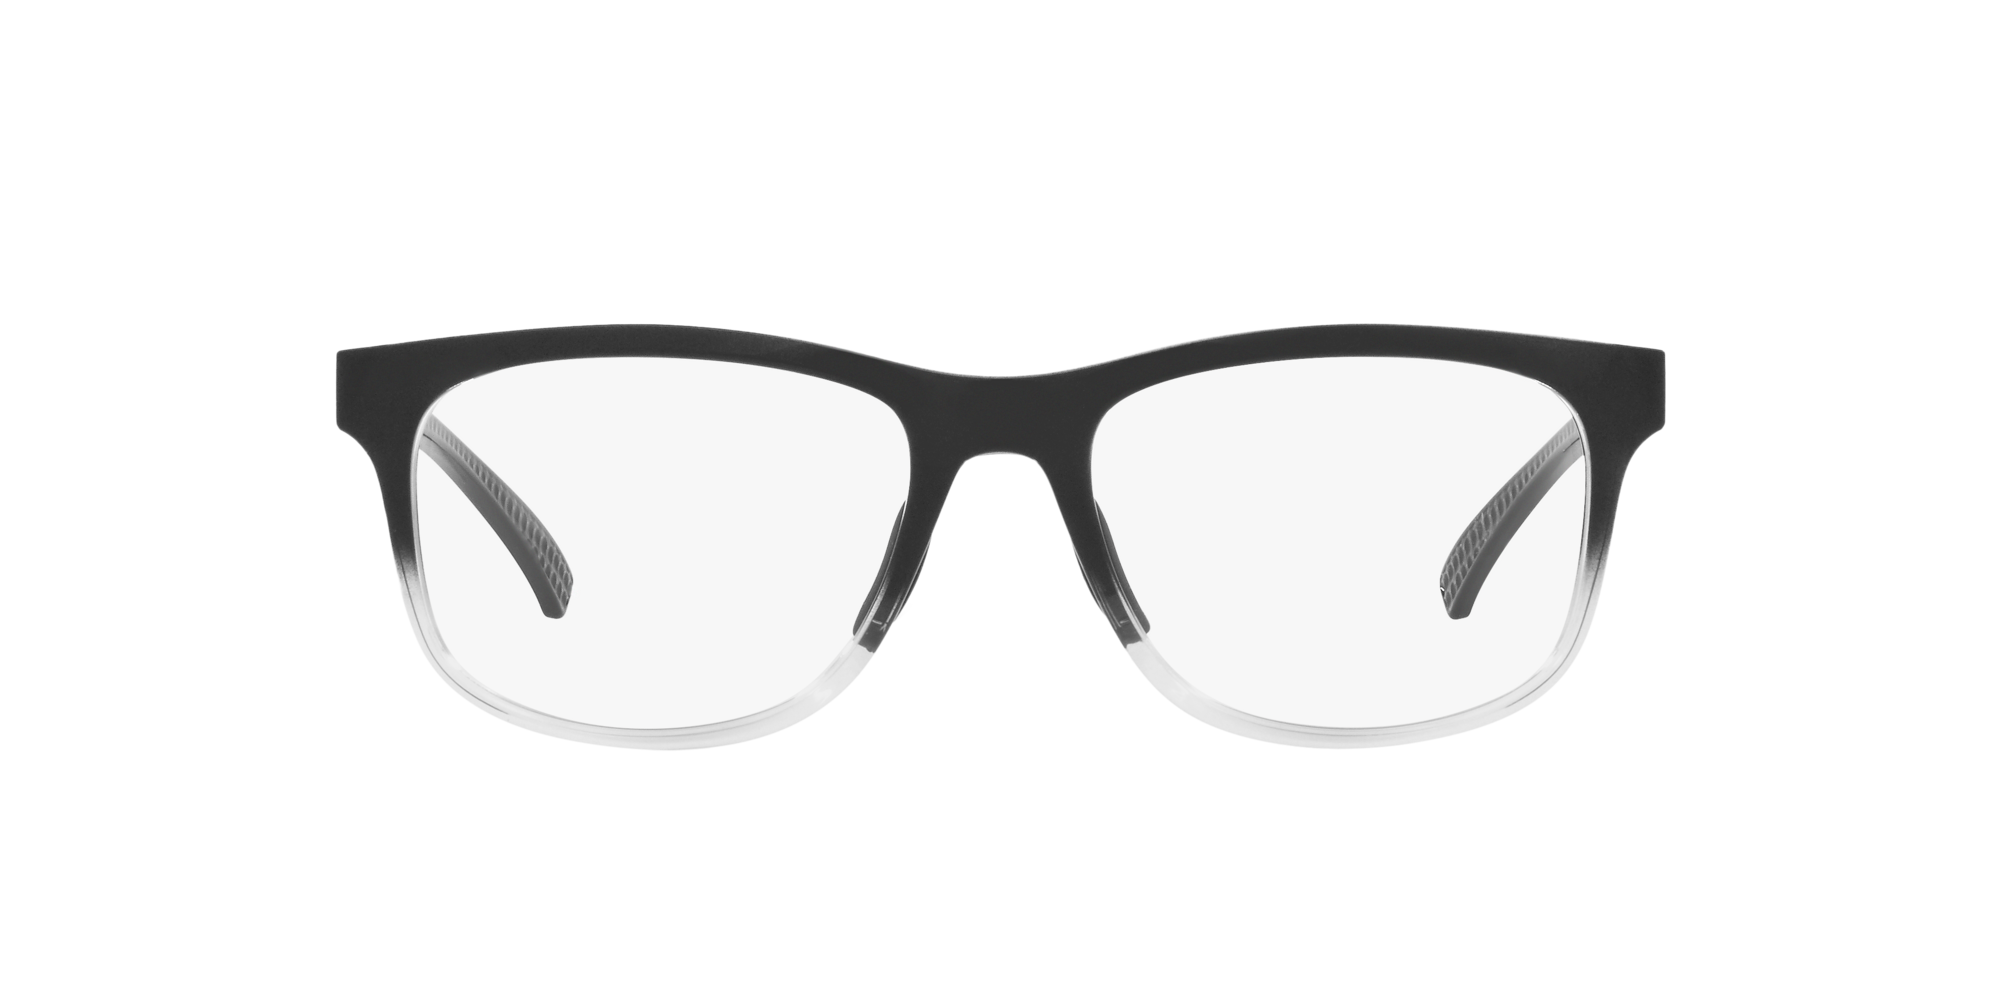 Das Bild zeigt die Korrektionsbrille OX8175 817505 von der Marke Oakley  in schwarz poliert verblassend.